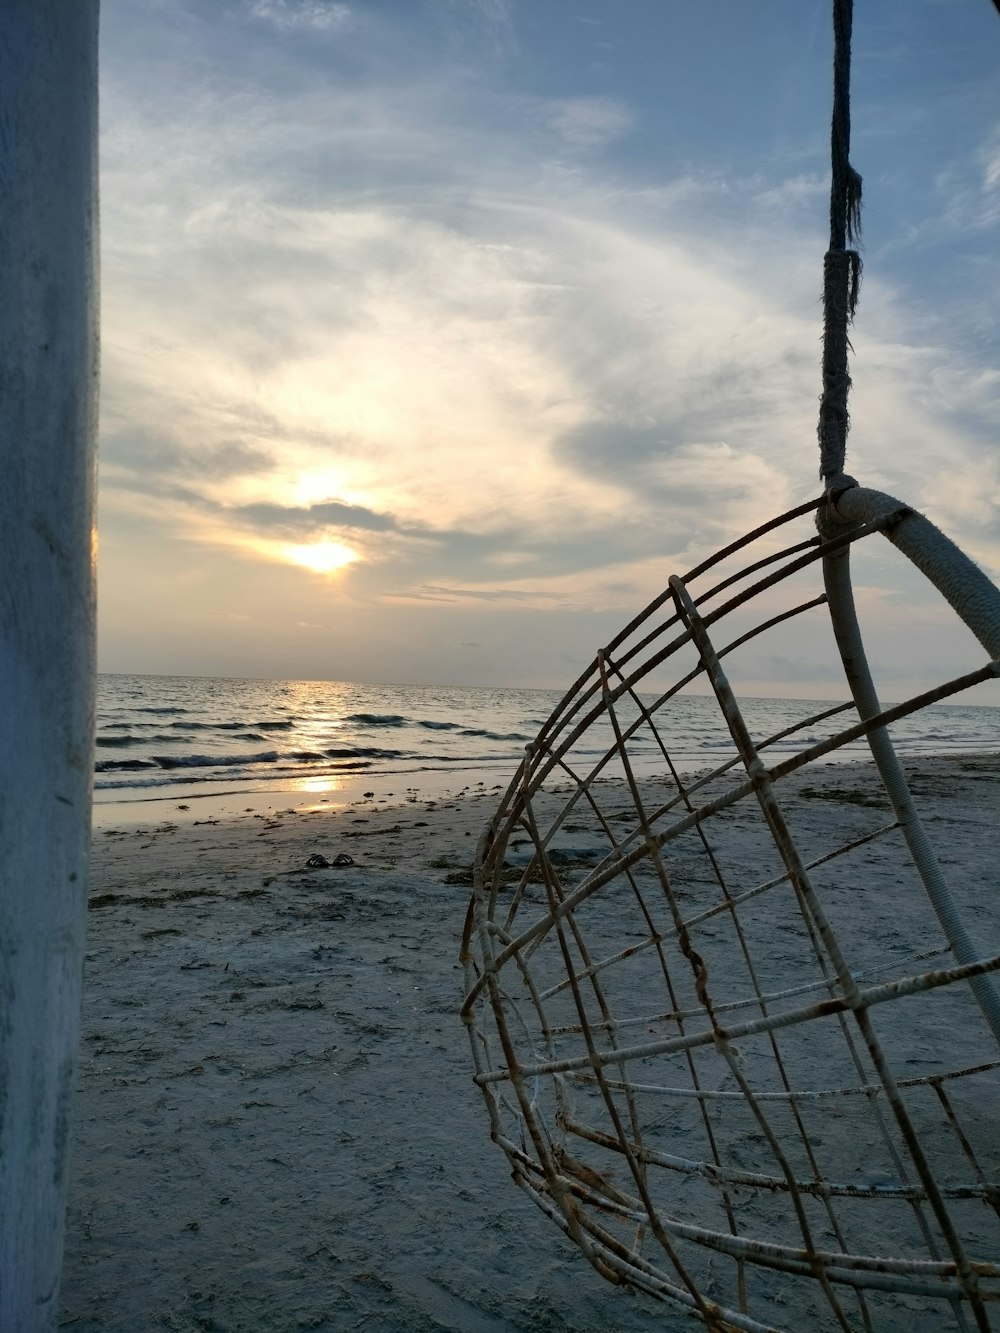 Le soleil se couche sur la plage avec une balançoire